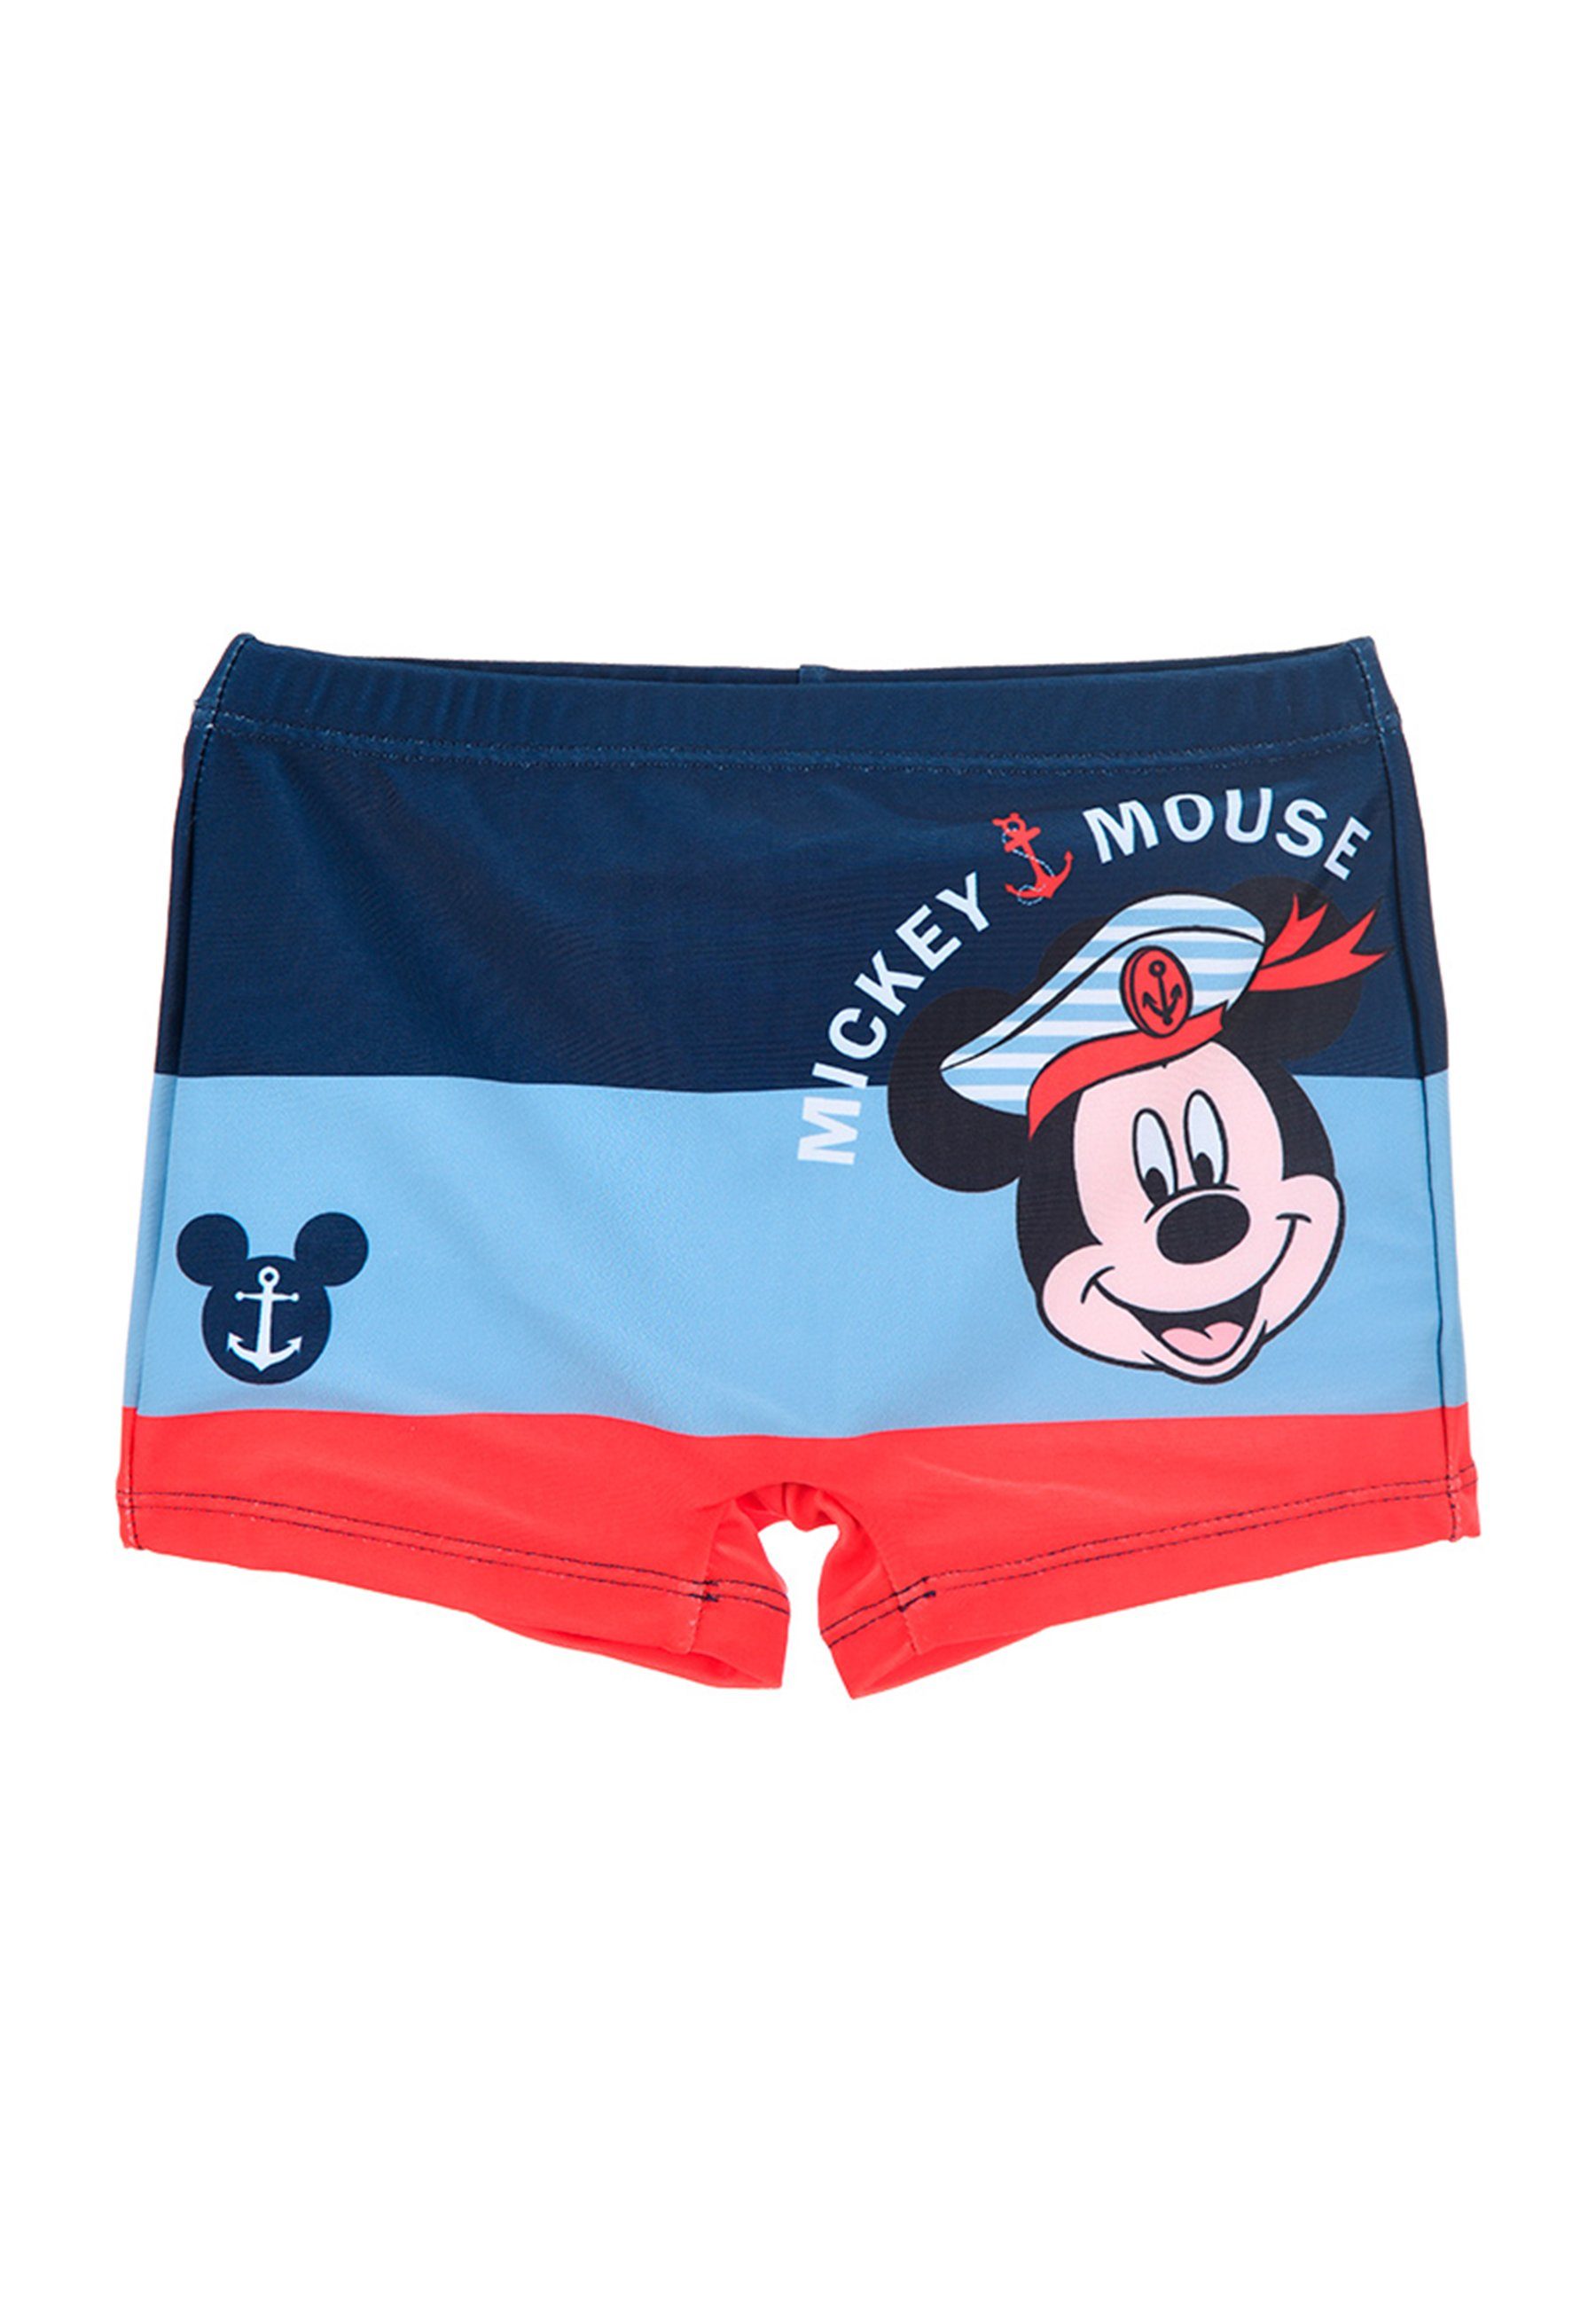 Neueste Produkte aus dem Ausland Disney Mickey Mouse Badehose Schwimmhose Dunkel-Blau Jungen Baby